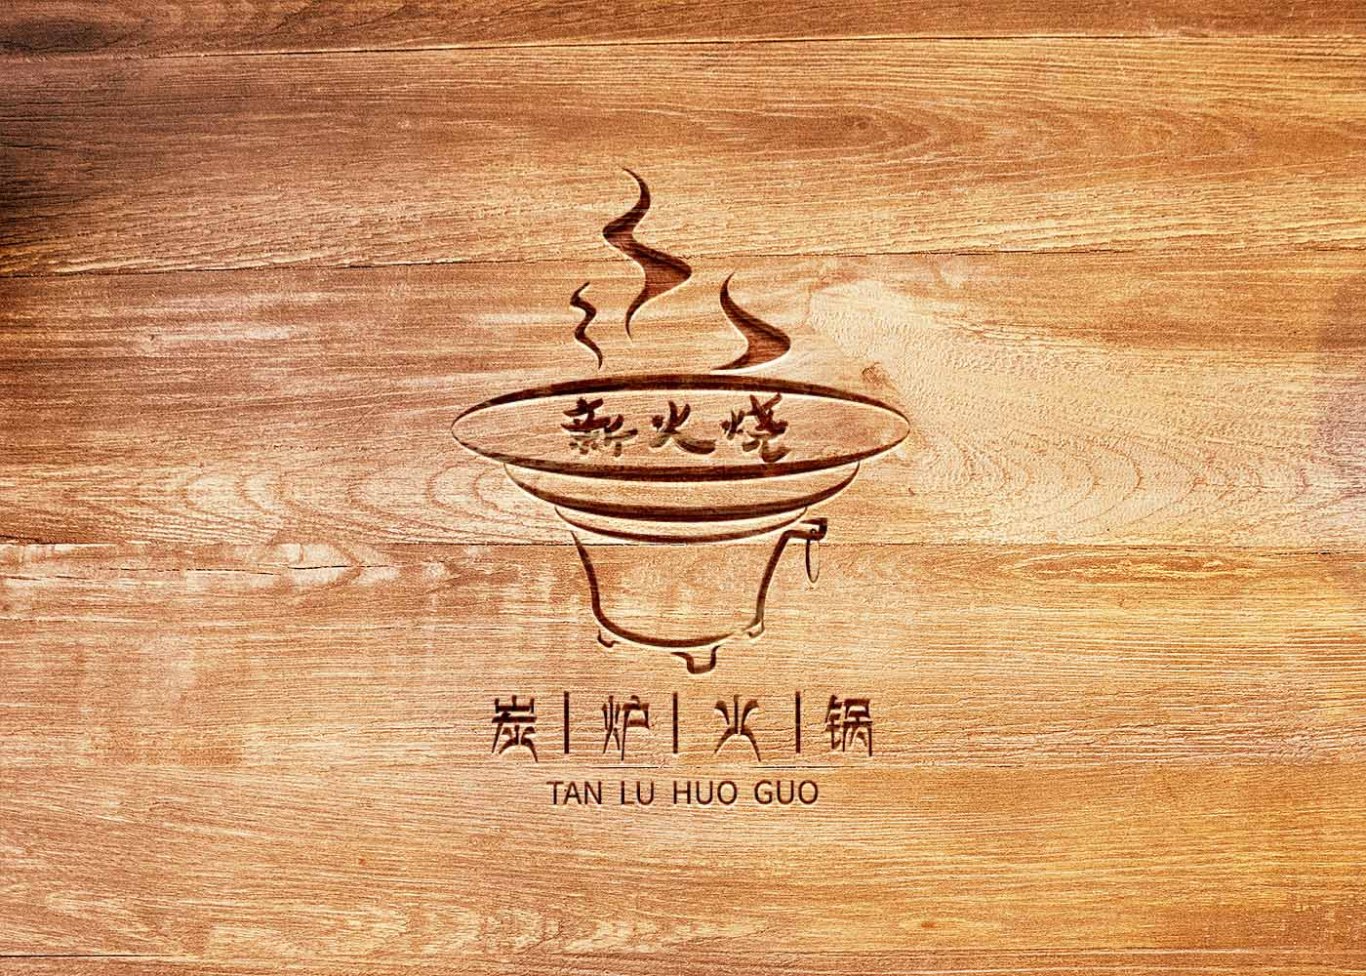 炭炉火锅LOGO设计 餐饮品牌设计 食品标志设计图3